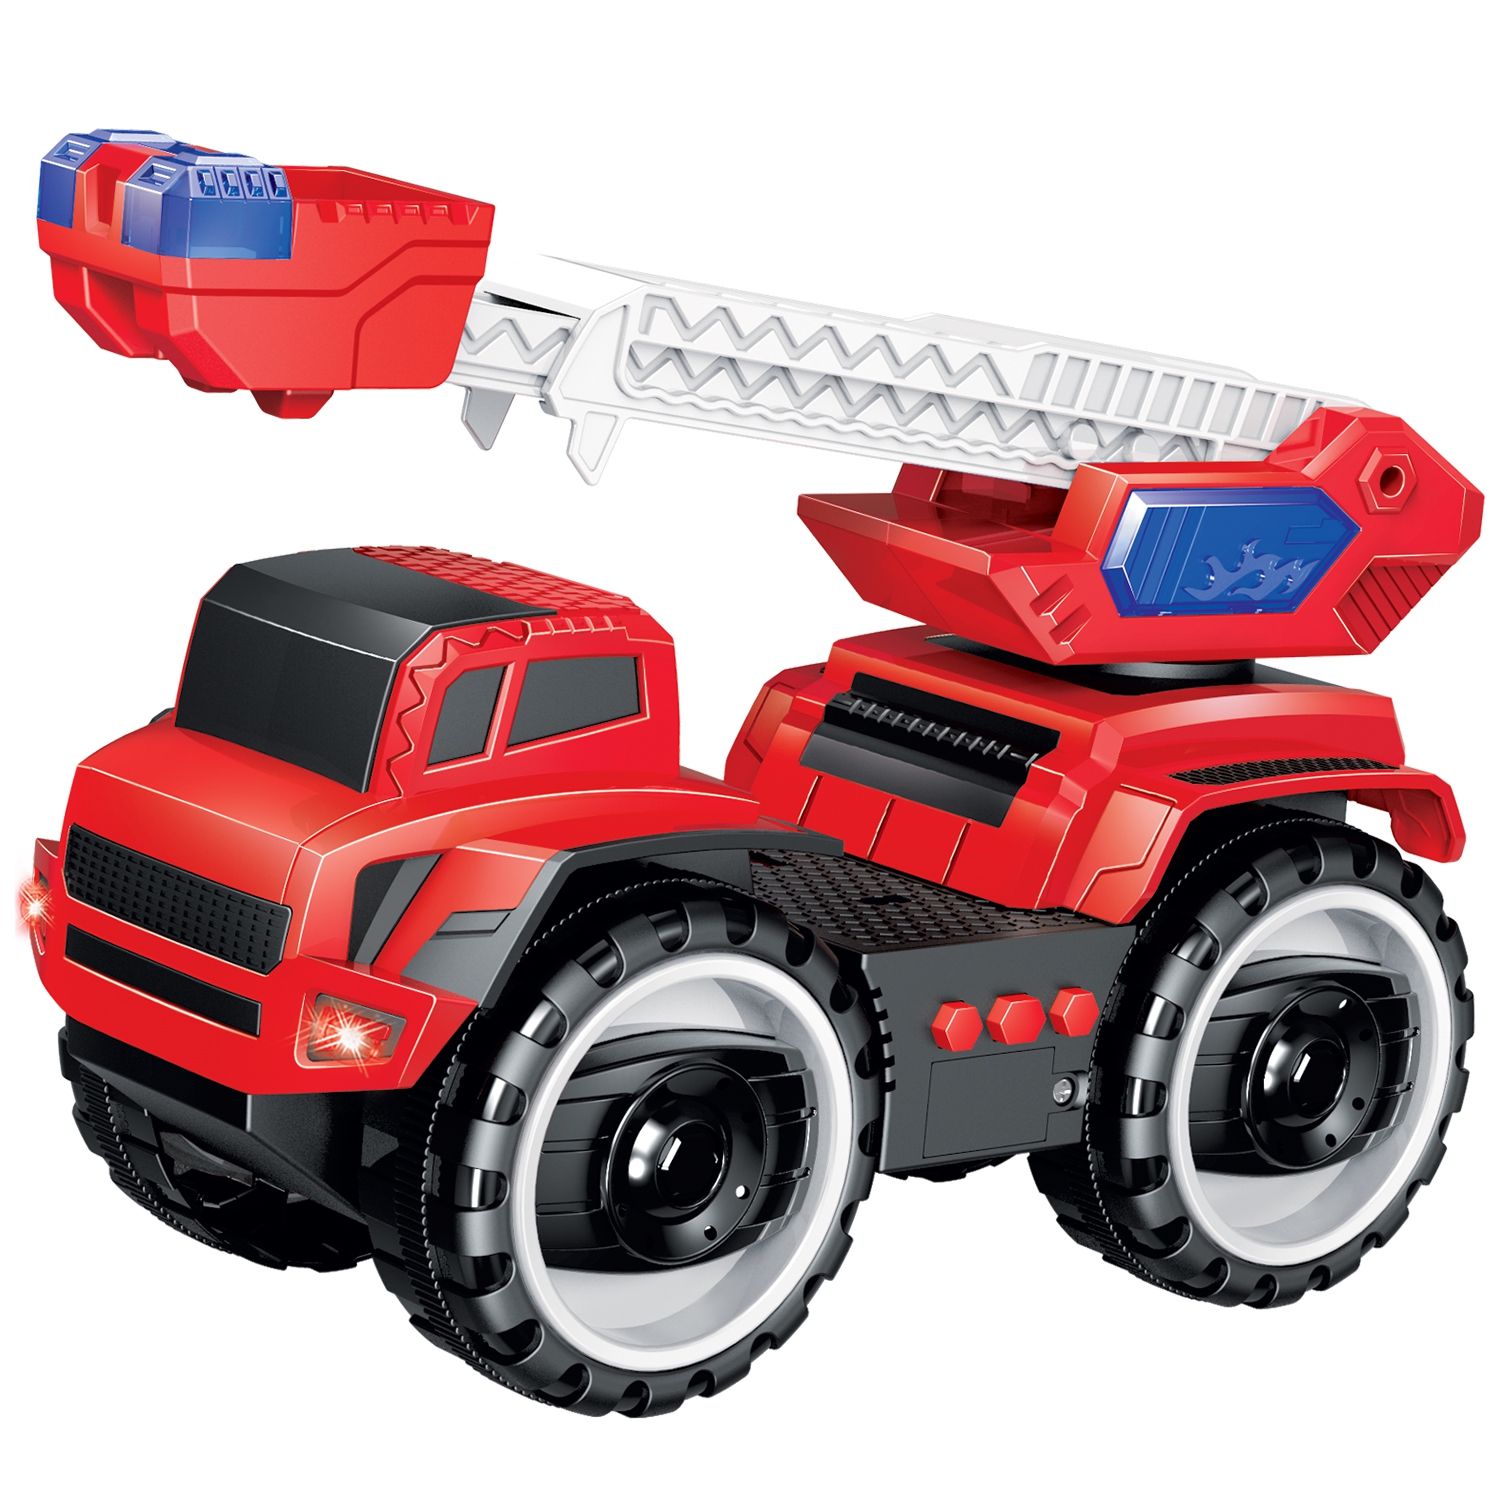 Пожарный автомобиль Handers "Большие колёса: Пожарная автолестница", 22 см, звук, свет, красный (HAC1608-148)